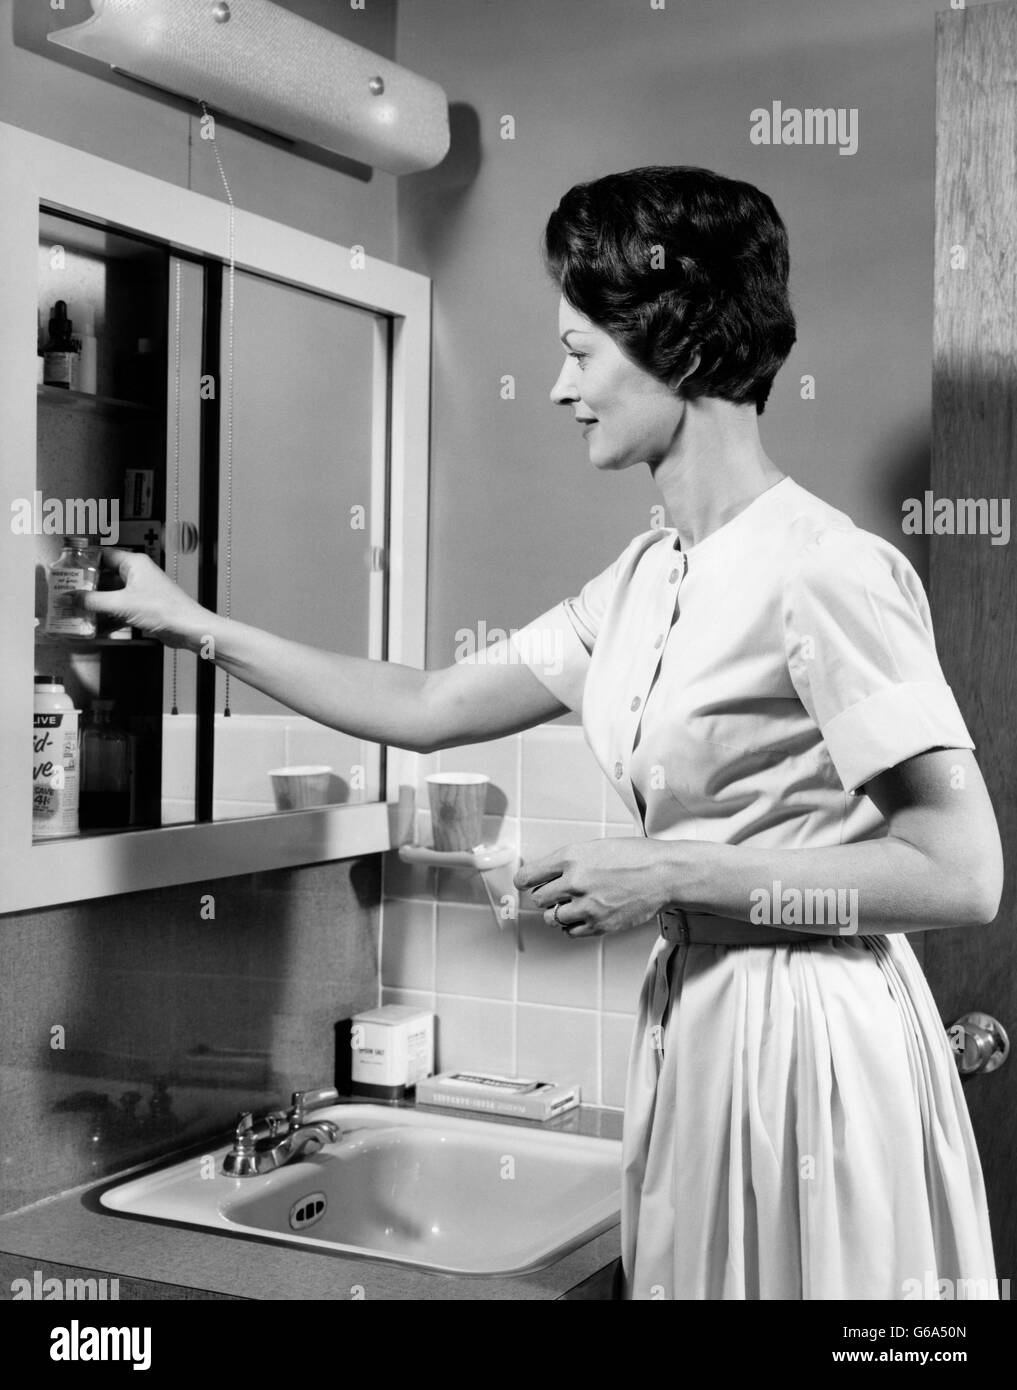 1960 MORENITA mujer toma píldoras de BOTELLA DE BAÑO GABINETE DE MEDICINA Foto de stock